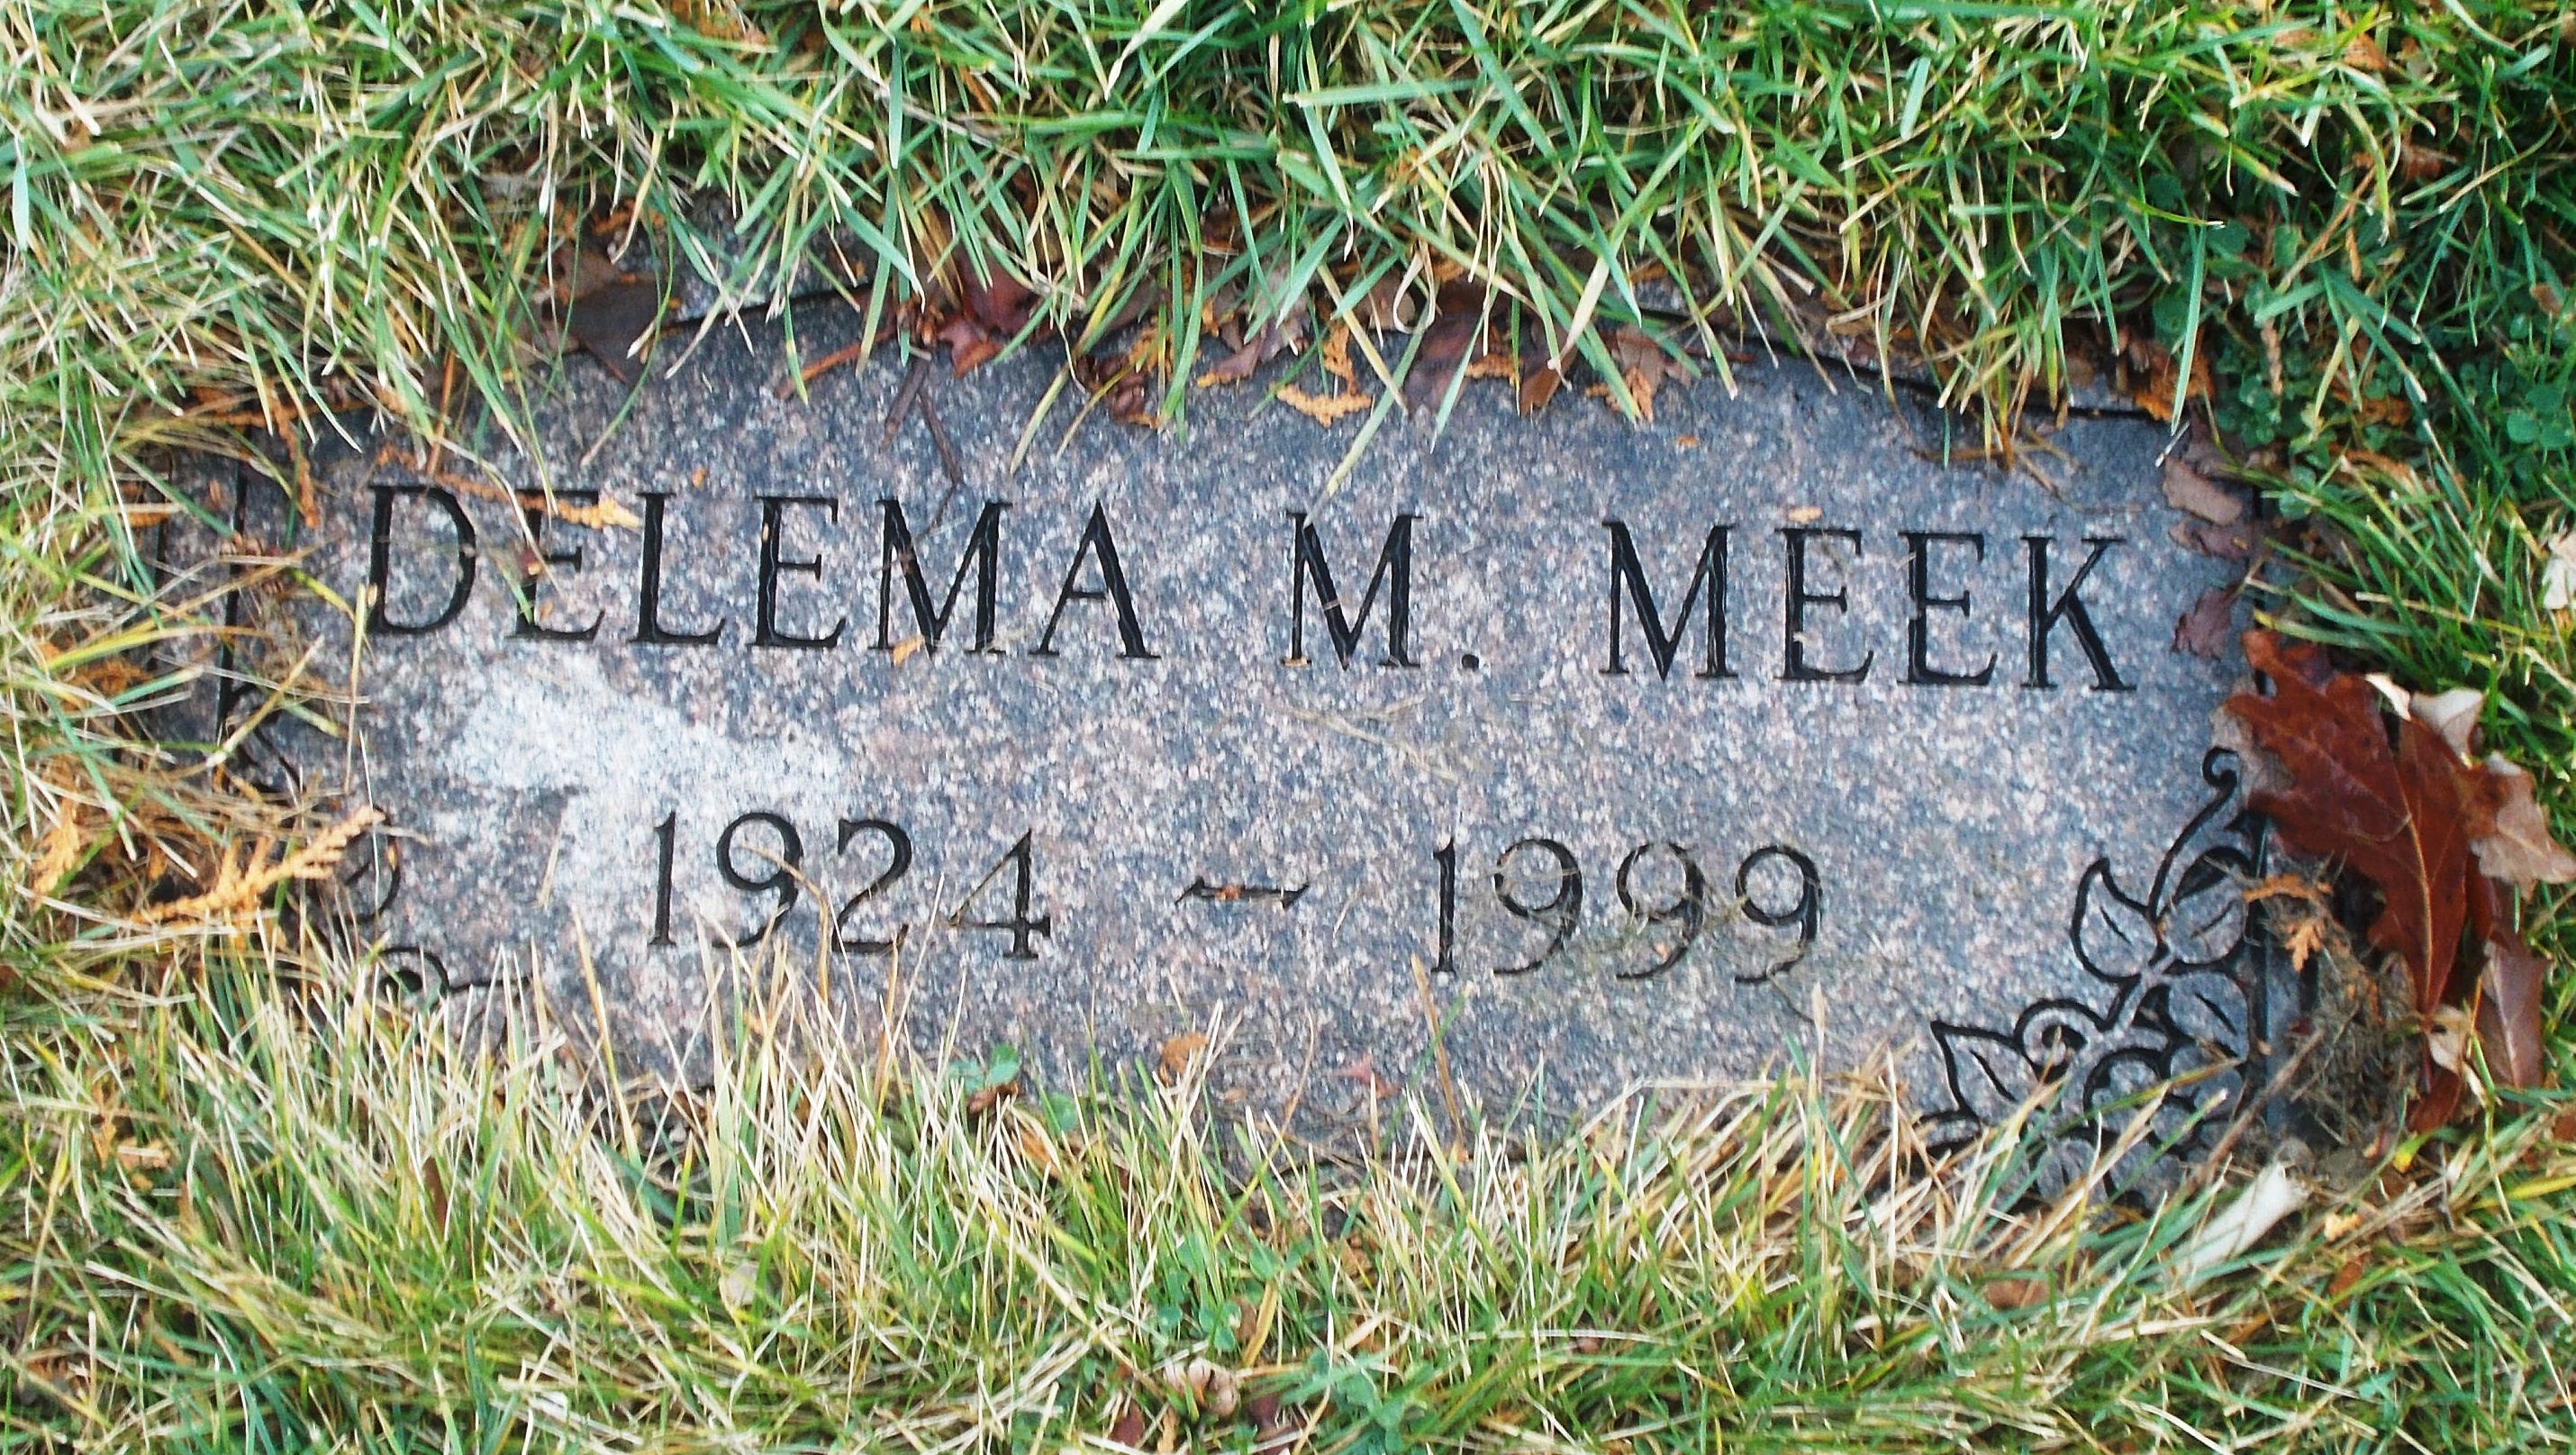 Delema M Meek